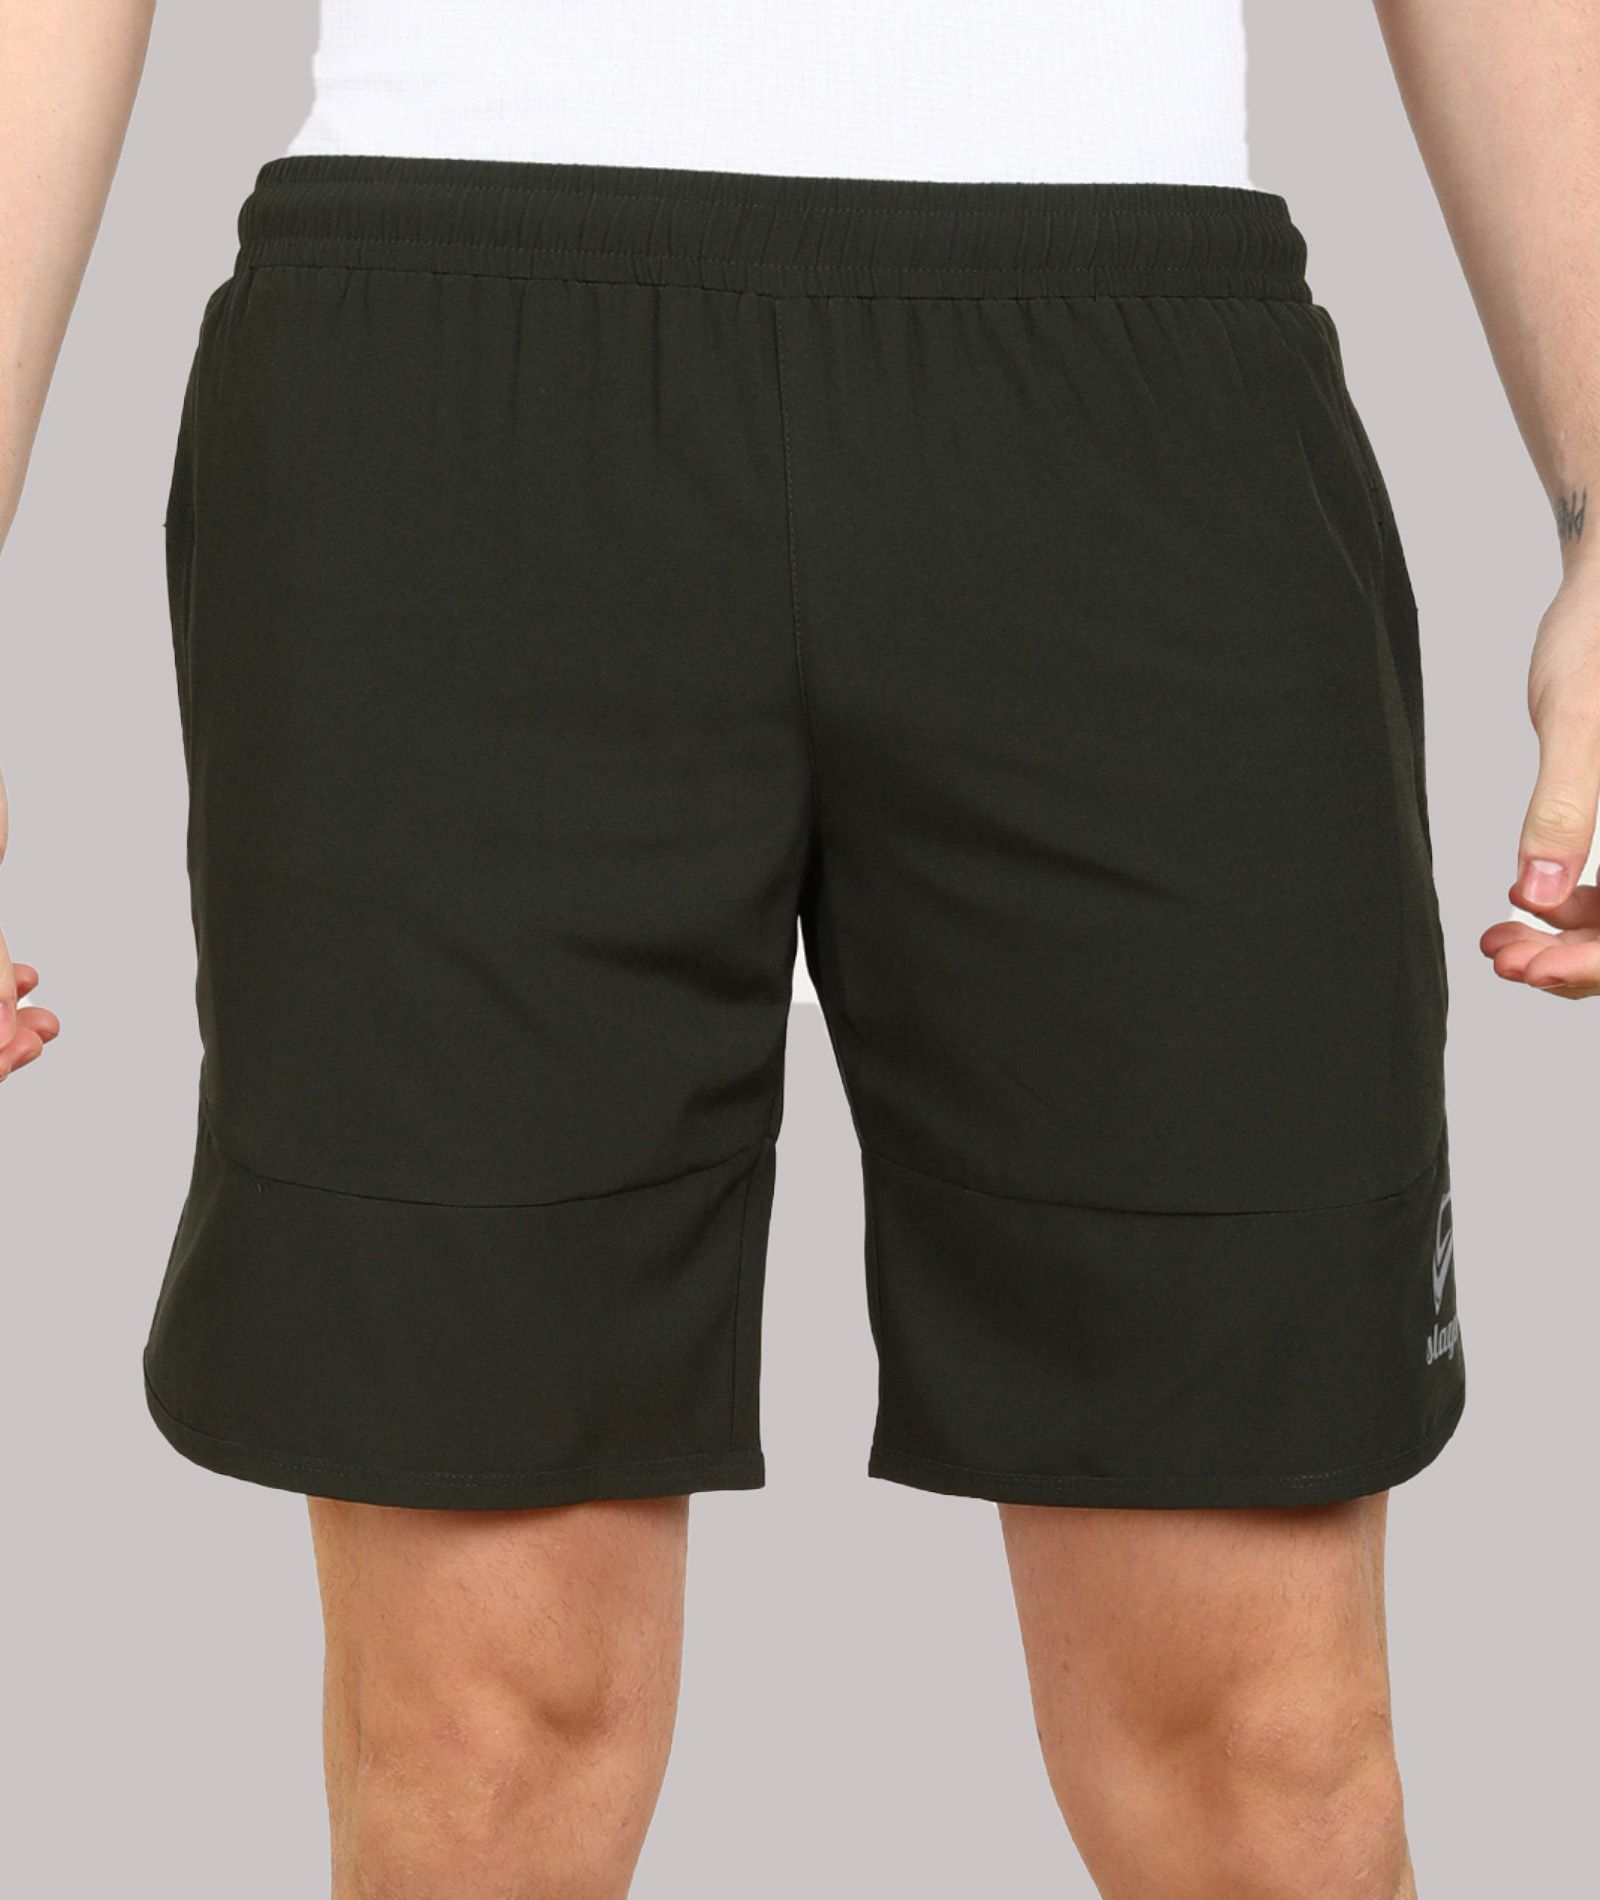     			SLAGEN - Olive Green Polyester Men's Running Shorts ( Pack of 1 )